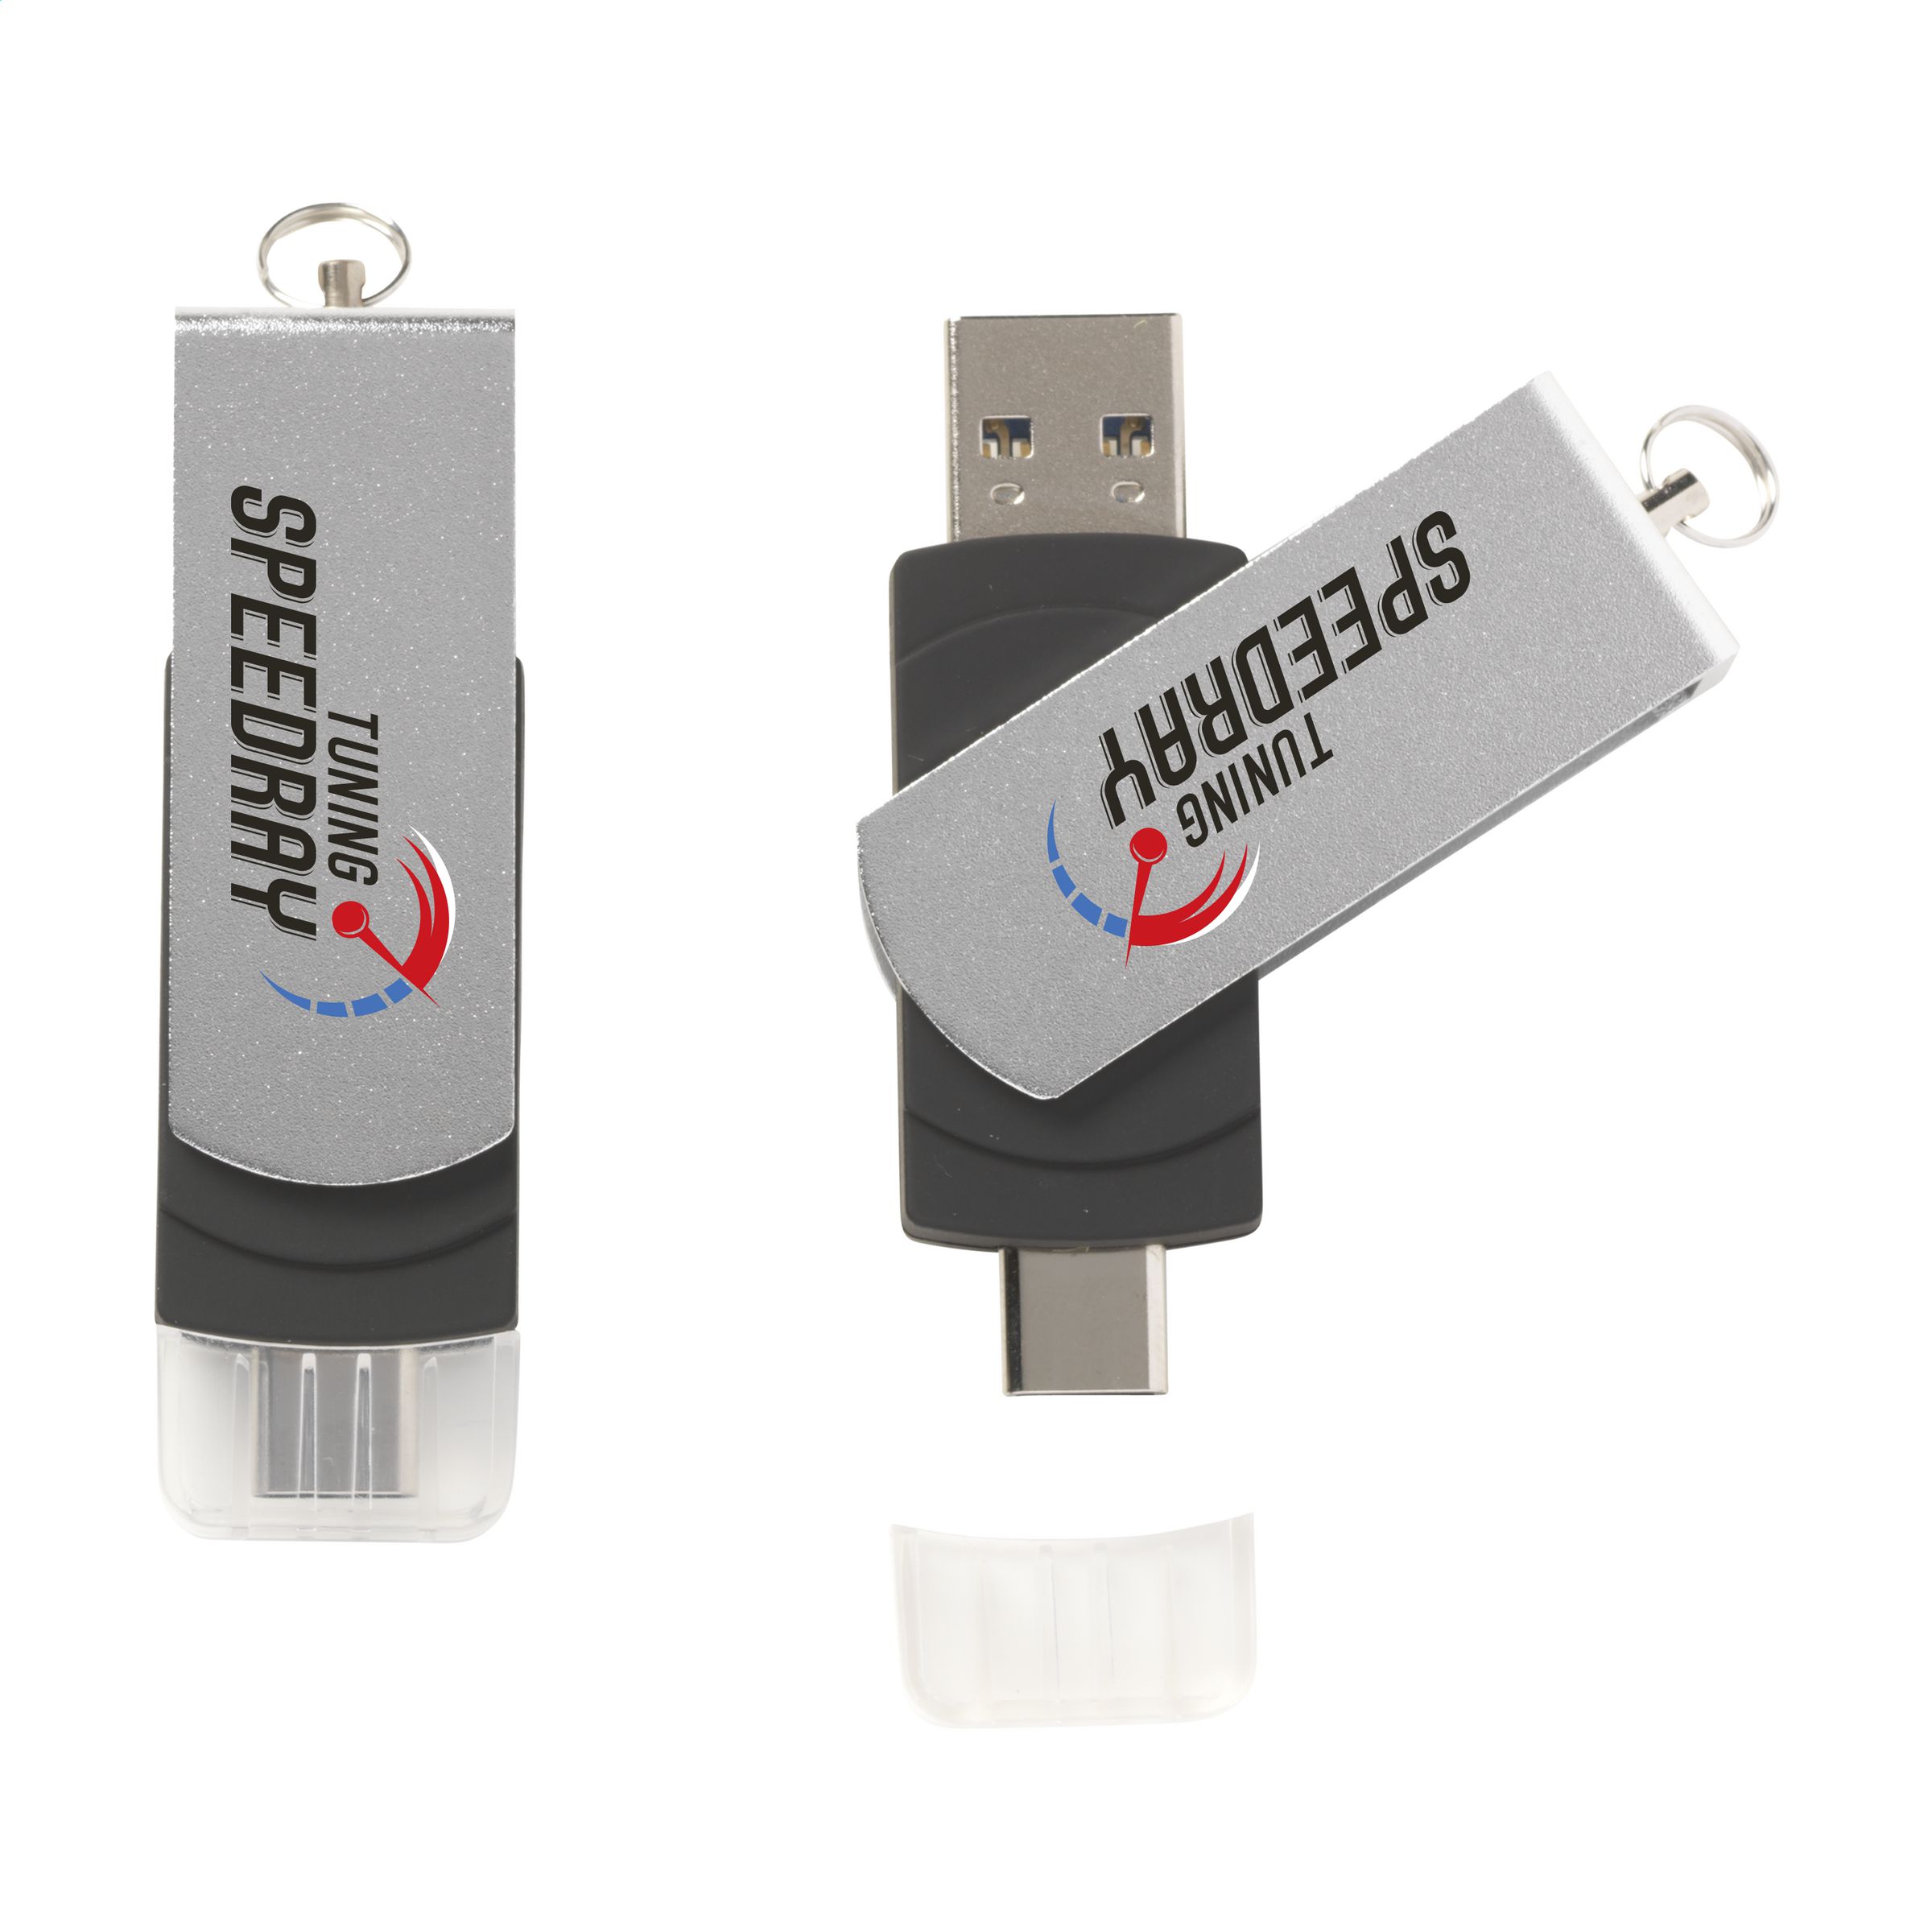 Dual-Connector USB-Stick - Feldbach